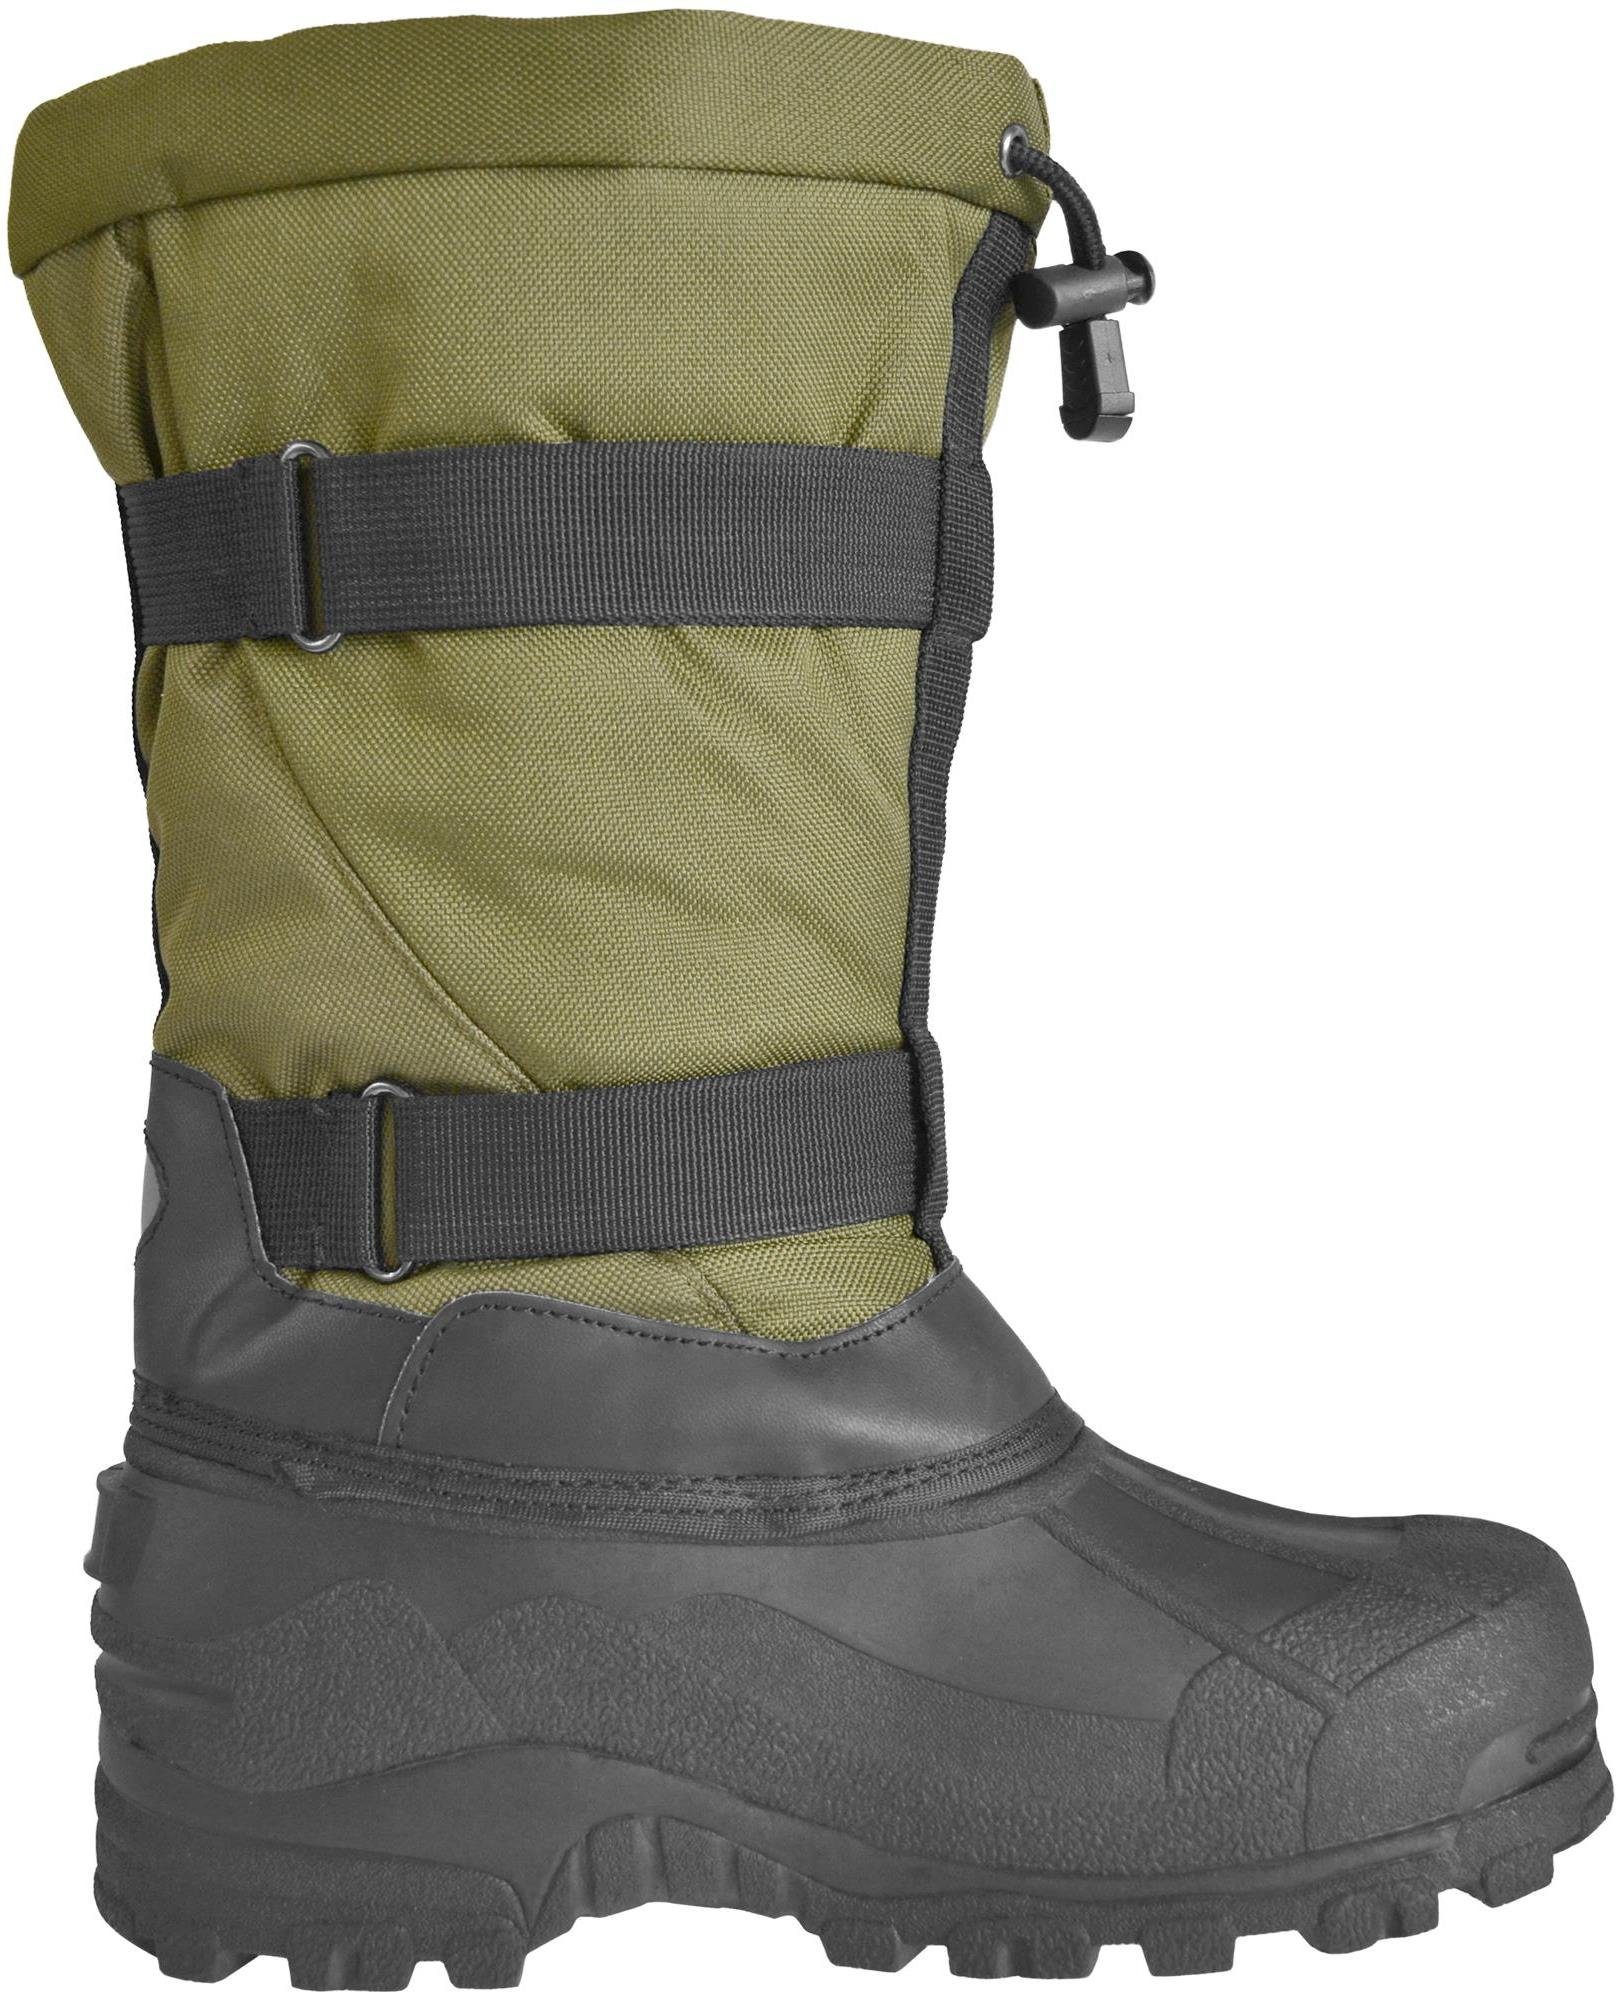 Schuhe Outdoorschuhe normani Herren Winterstiefel Arctic Boots Outdoorwinterstiefel Kälteschutzstiefel Thermostiefel Outdoorwint